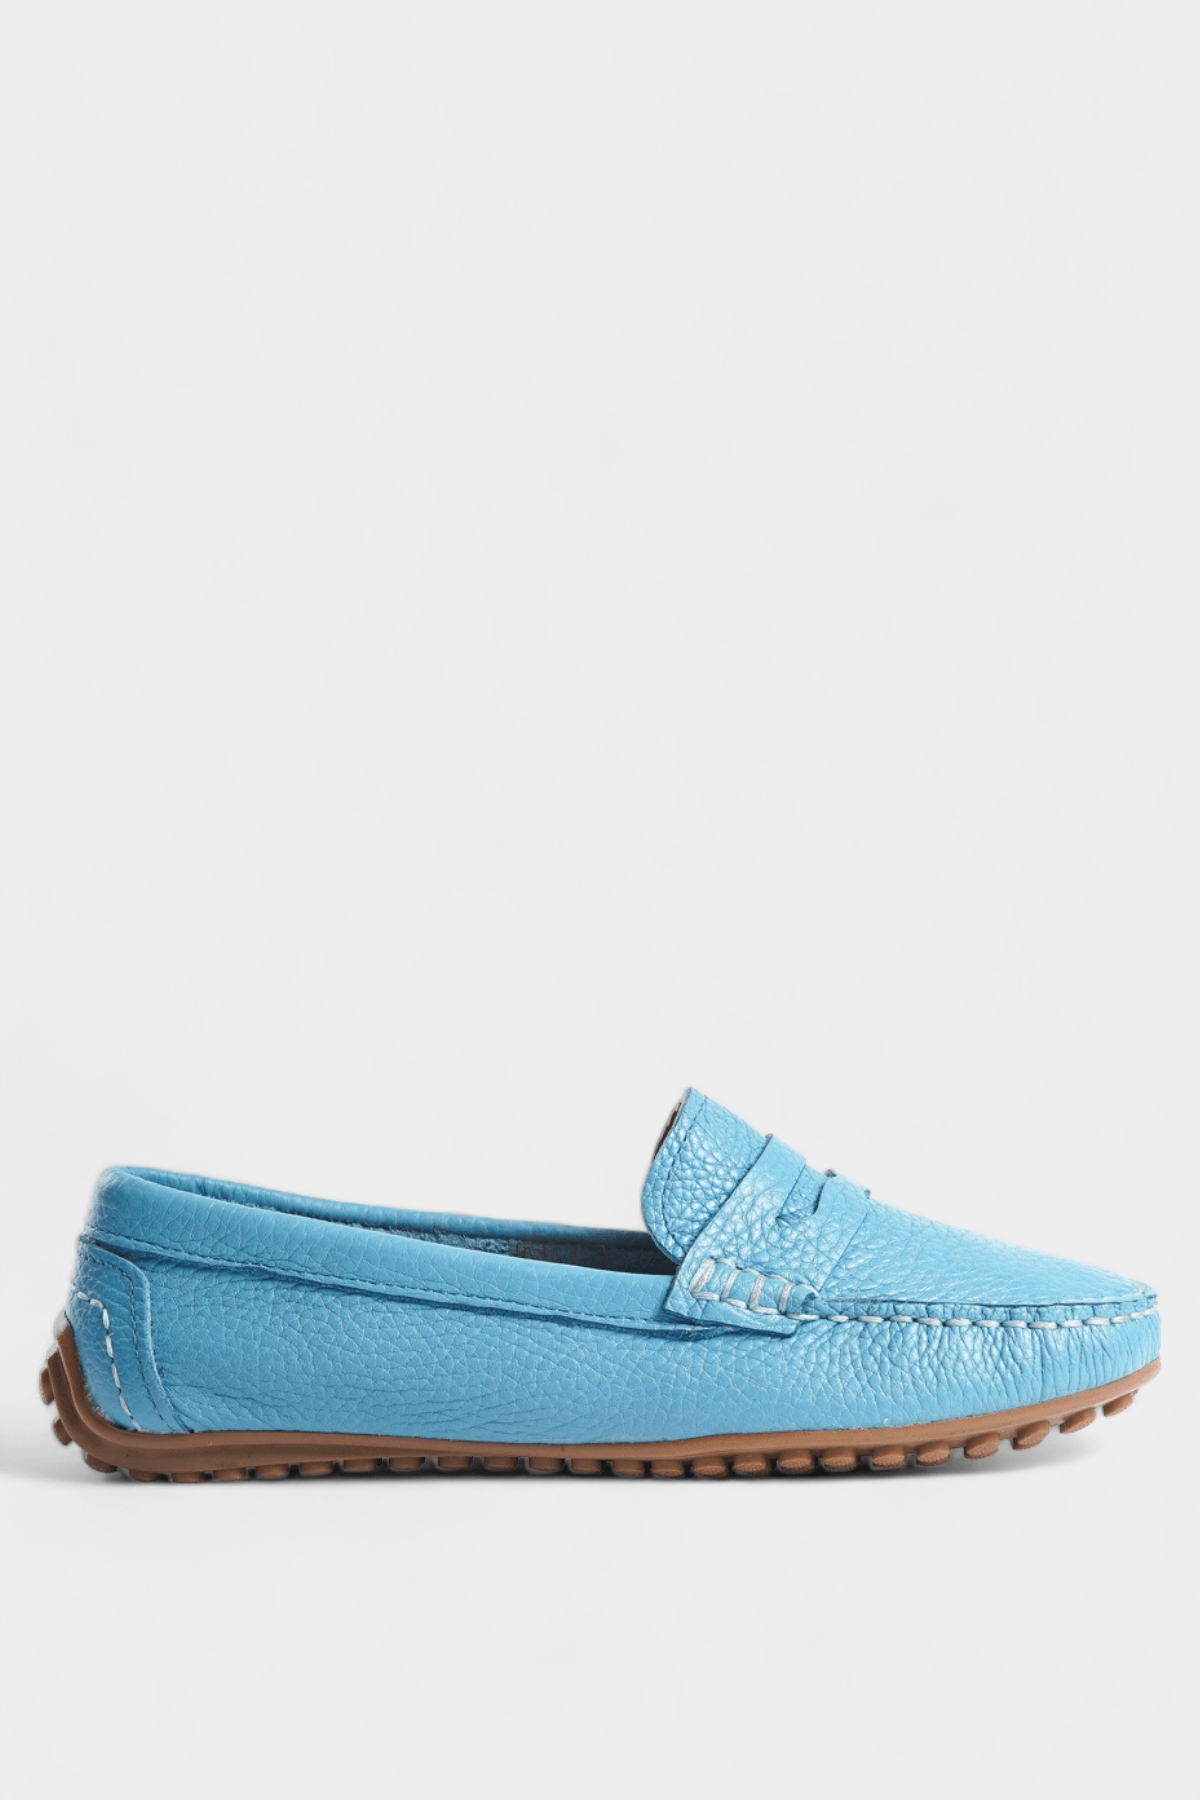 Mavi Hakiki Deri Loafer Ayakkabı Kadın Babet